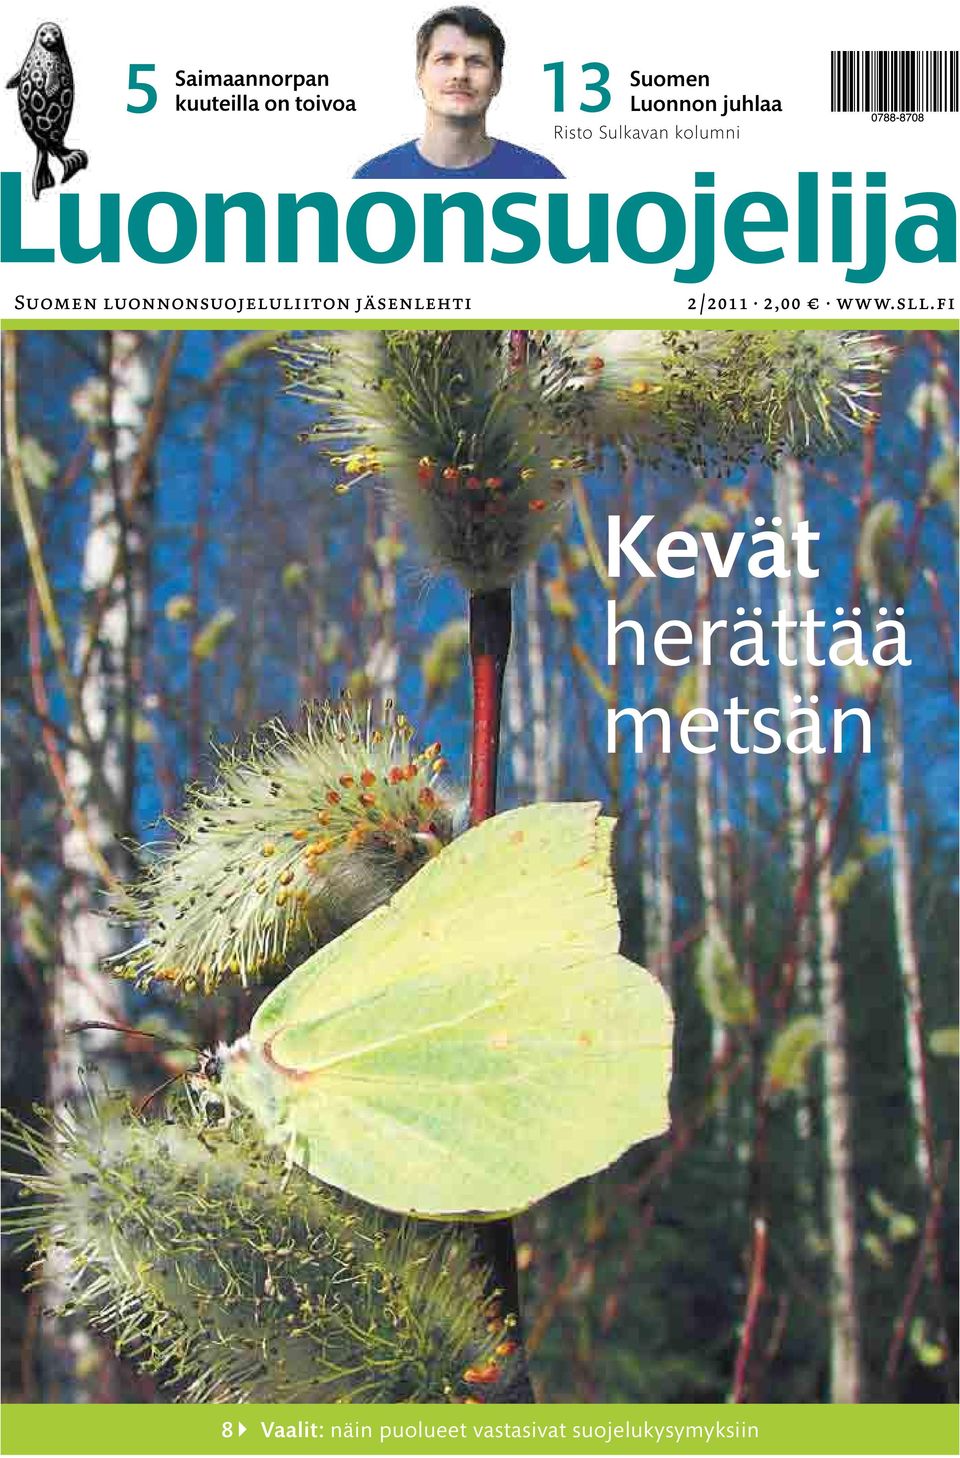 luonnonsuojeluliiton jäsenlehti 2 /2011 2,00 www.sll.